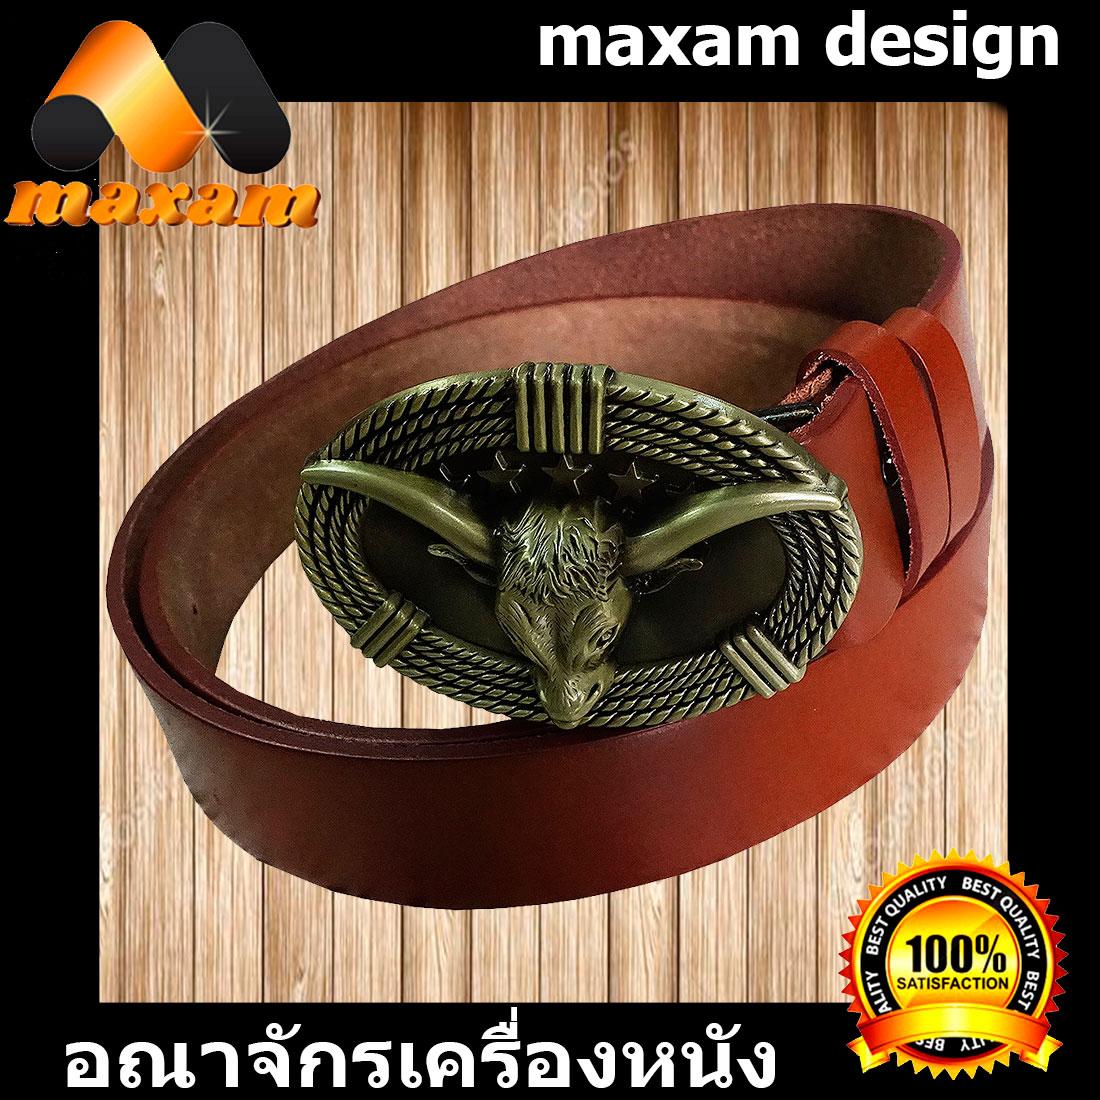 maxam design    ชาวบิ๊กไบท์ Big Bike หัวควายสีทองเหลือง เข็มขัดหนังวัวแท้ แบบเทห์ๆ มีให้เลือกมากมาย หัวเข็มขัดทำจากเหล็กซิง สายเข็มขัด กว้าง 1.5นิ้ว ยาวตลอดเส้น 45นิ้ว     maxam design